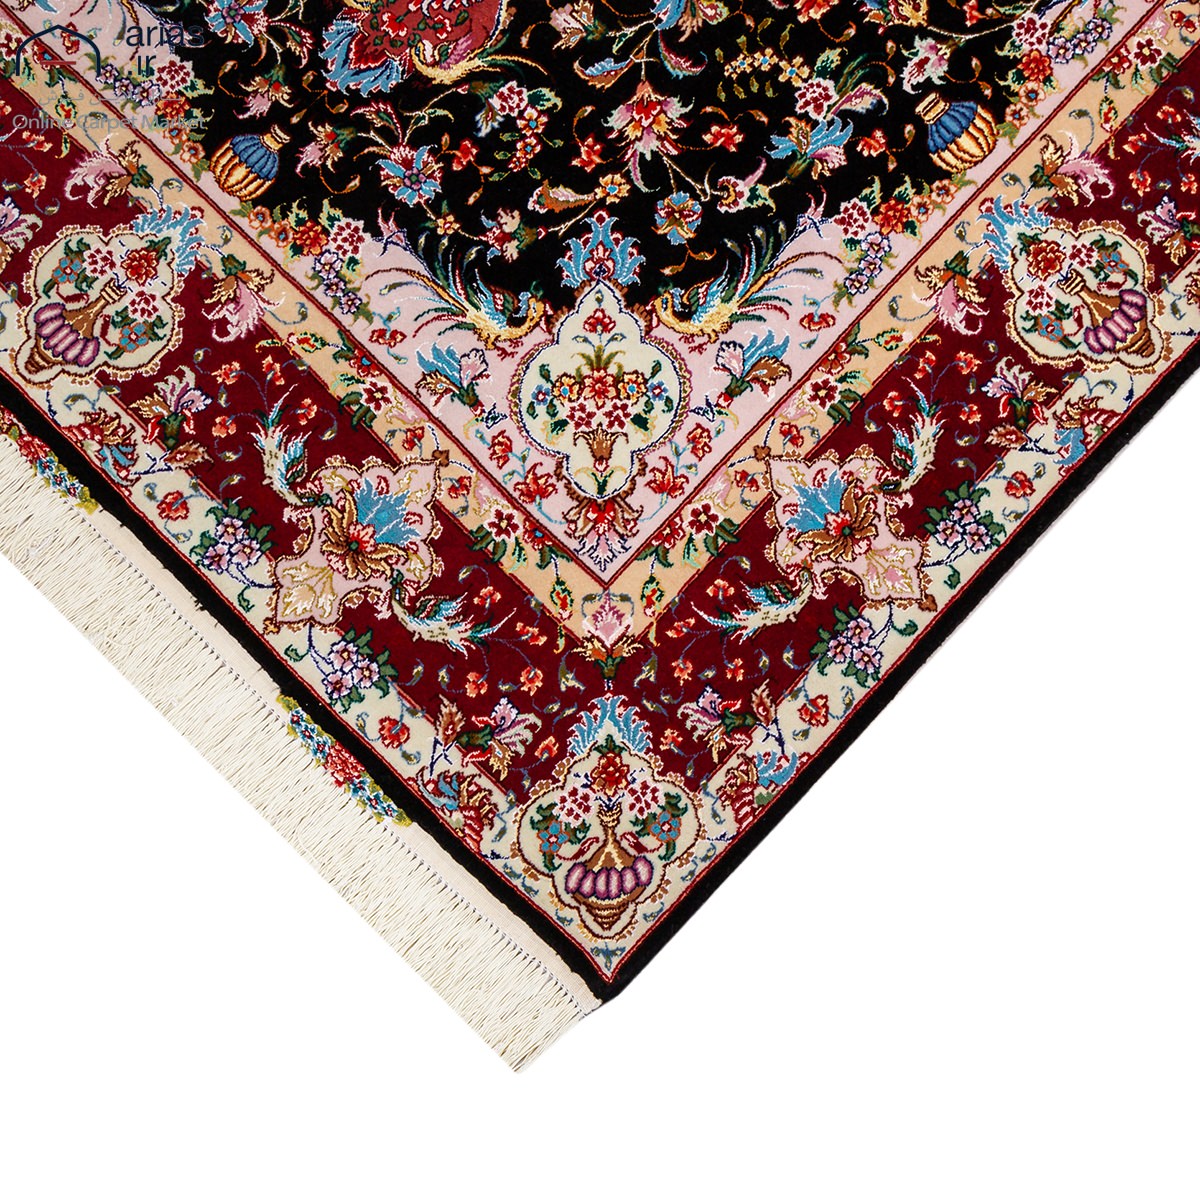 : فرش دستباف سه متری نقشه نشاط چله و گل ابریشم